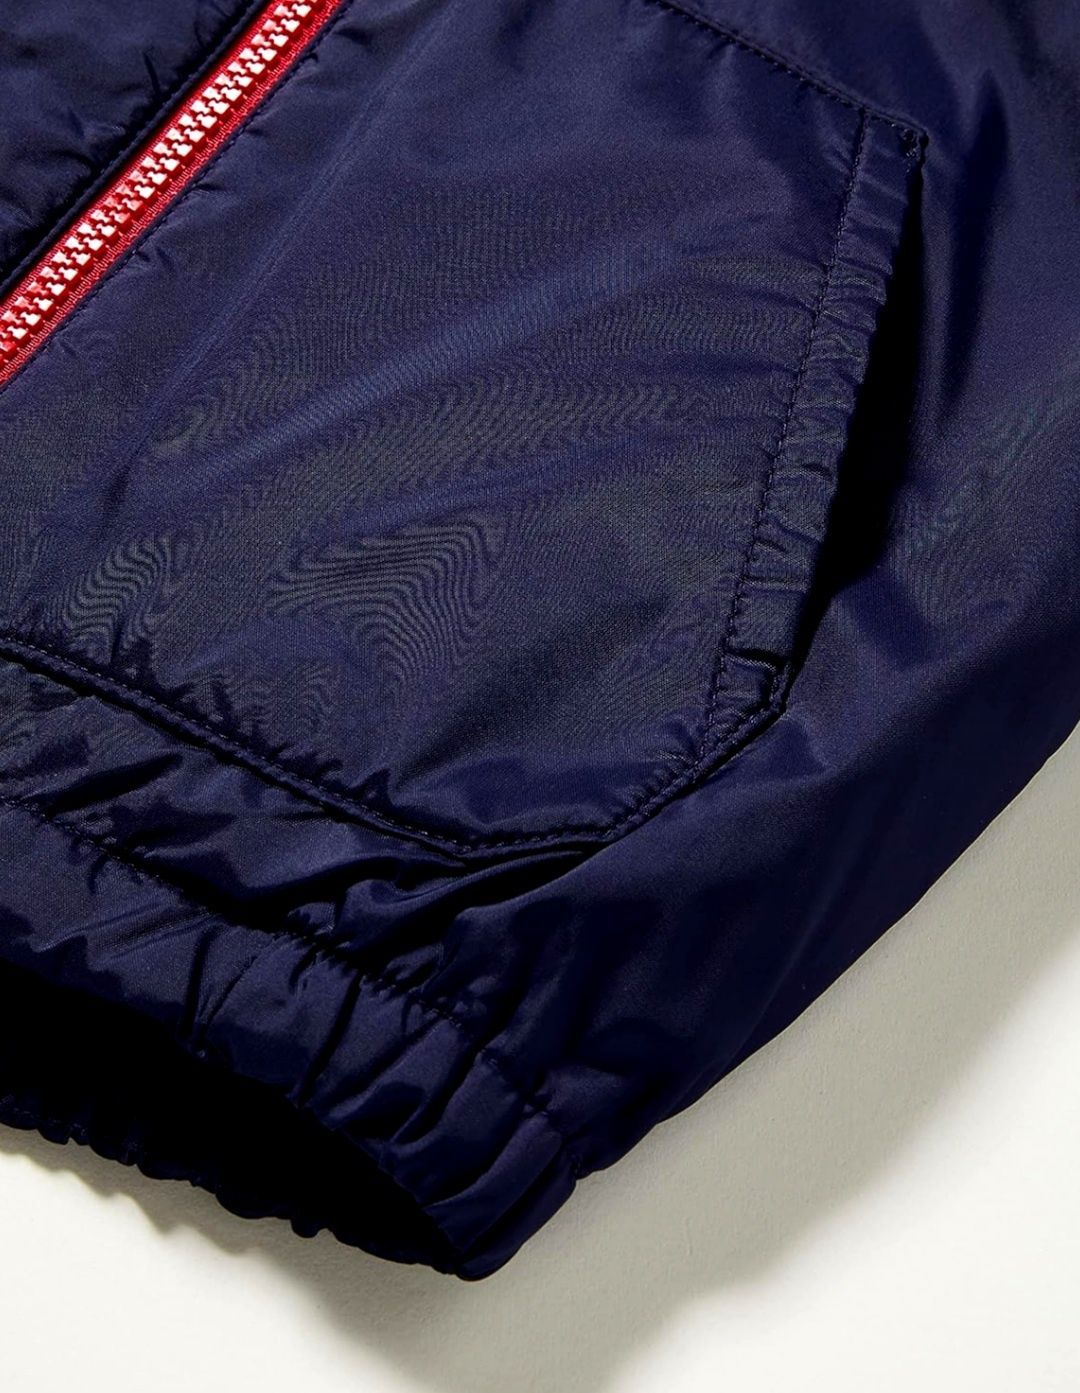 Benetton легкая куртка, утепленная ветровка 3-4 г 104 см